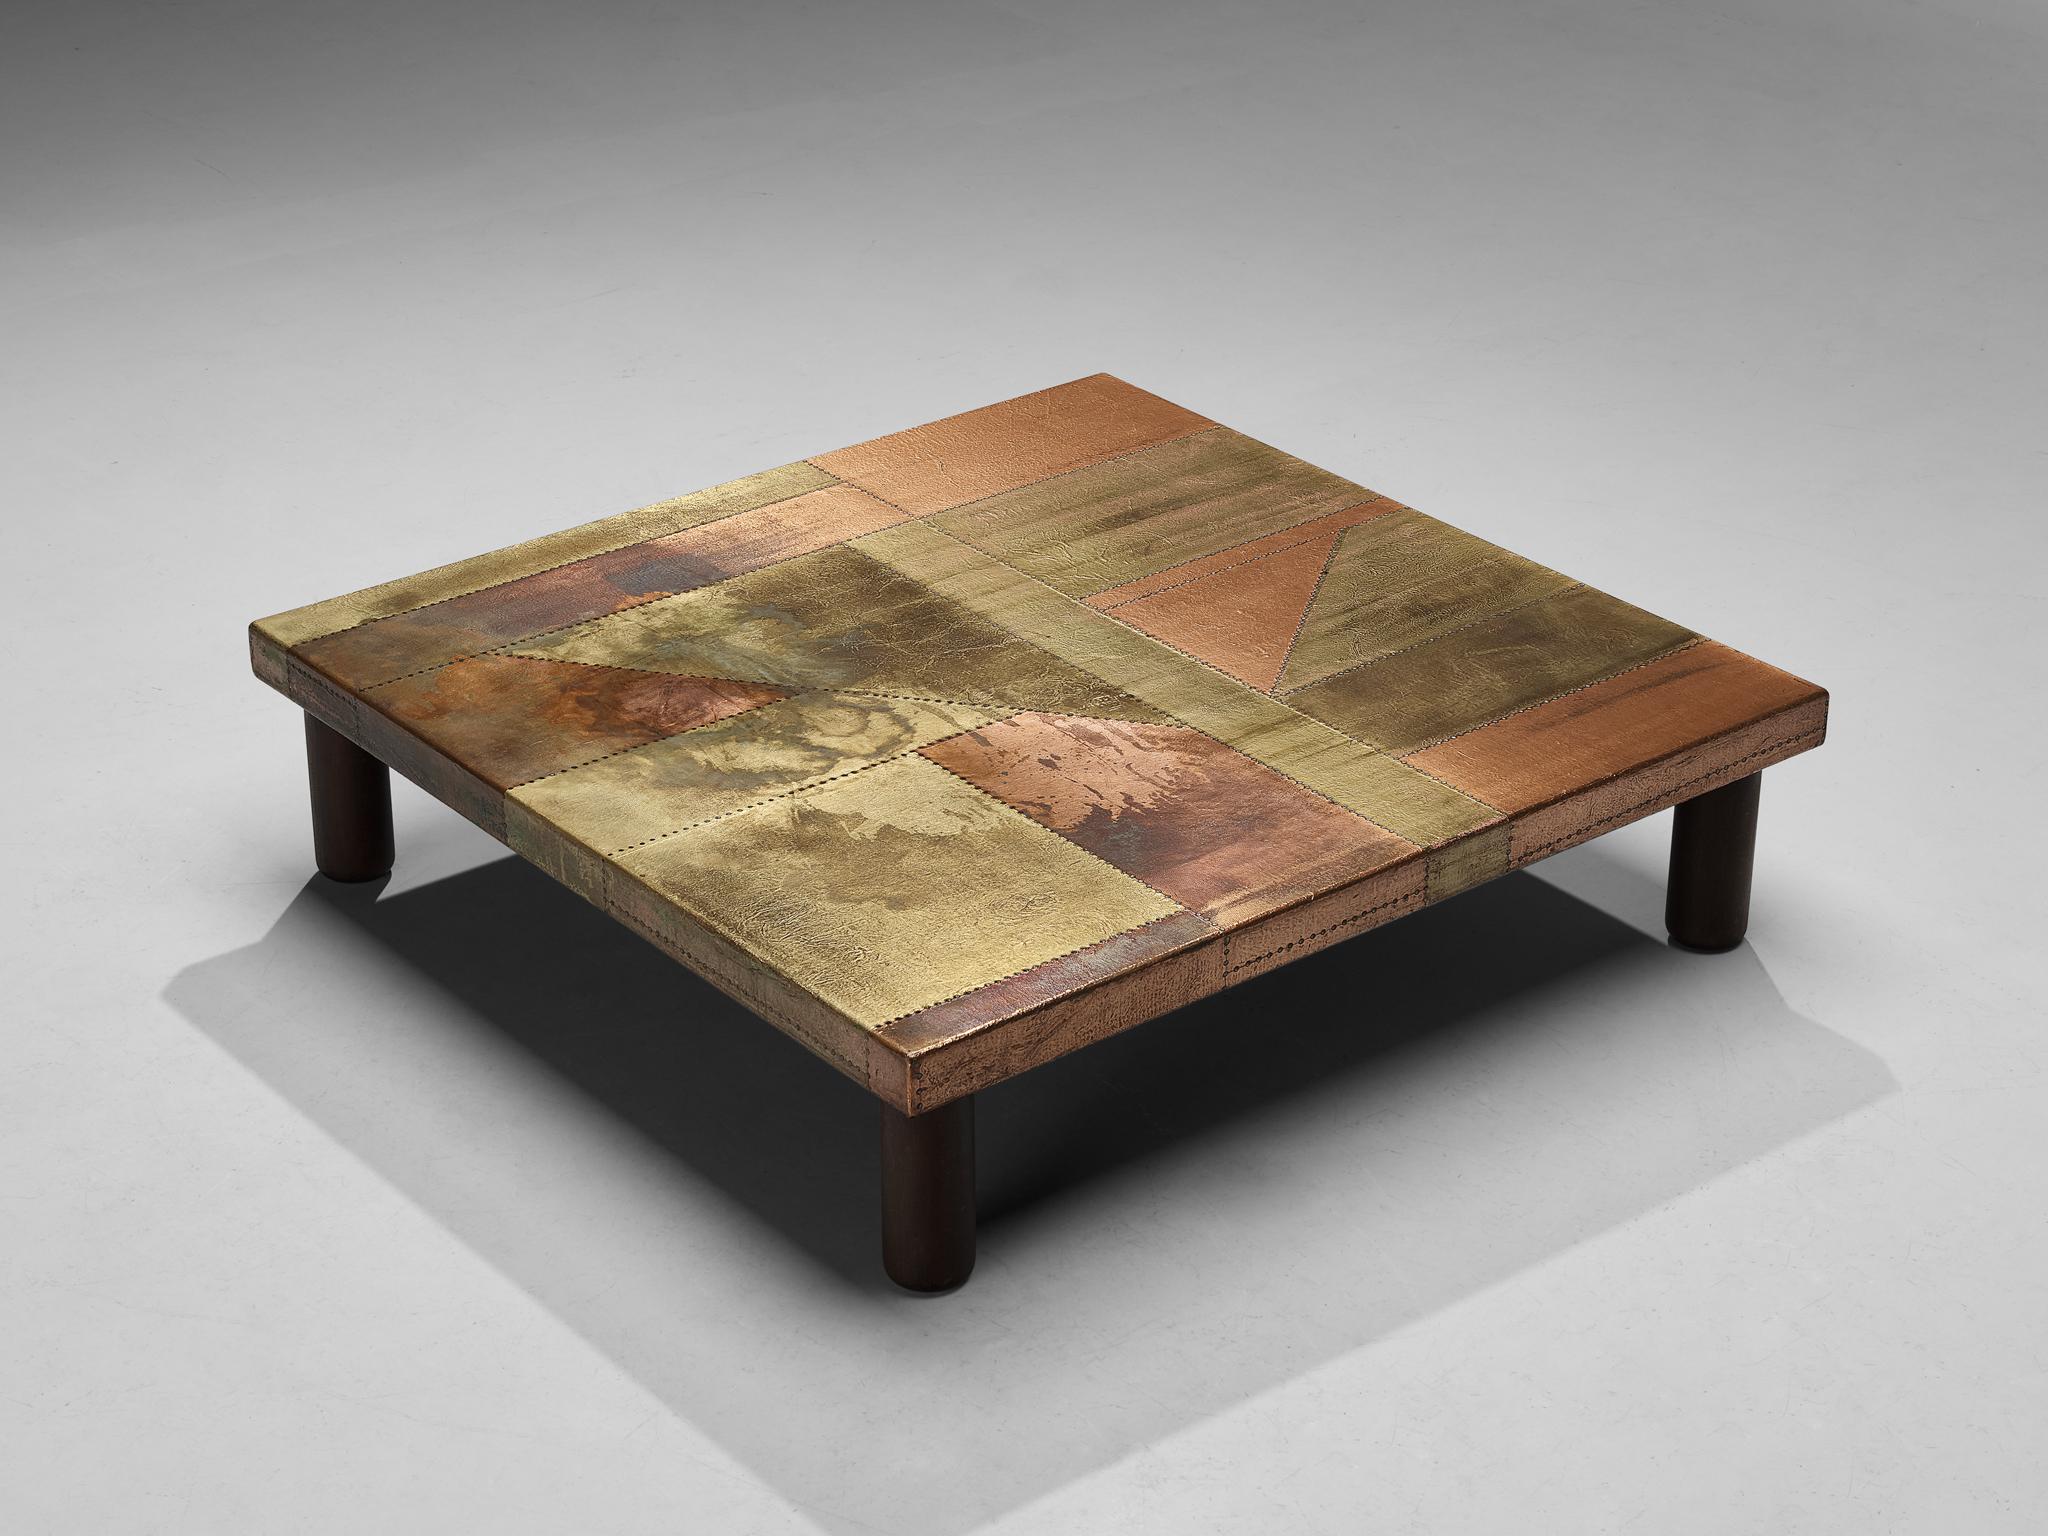 Lorenzo Burchiellaro, table basse, cuivre et bois, Italie, années 1960.

Cette table basse attire tous les regards. Le cuivre est en très bel état, patiné, et l'oxydation vibrante mais naturelle ainsi que la couleur dorée sont quelque chose d'unique